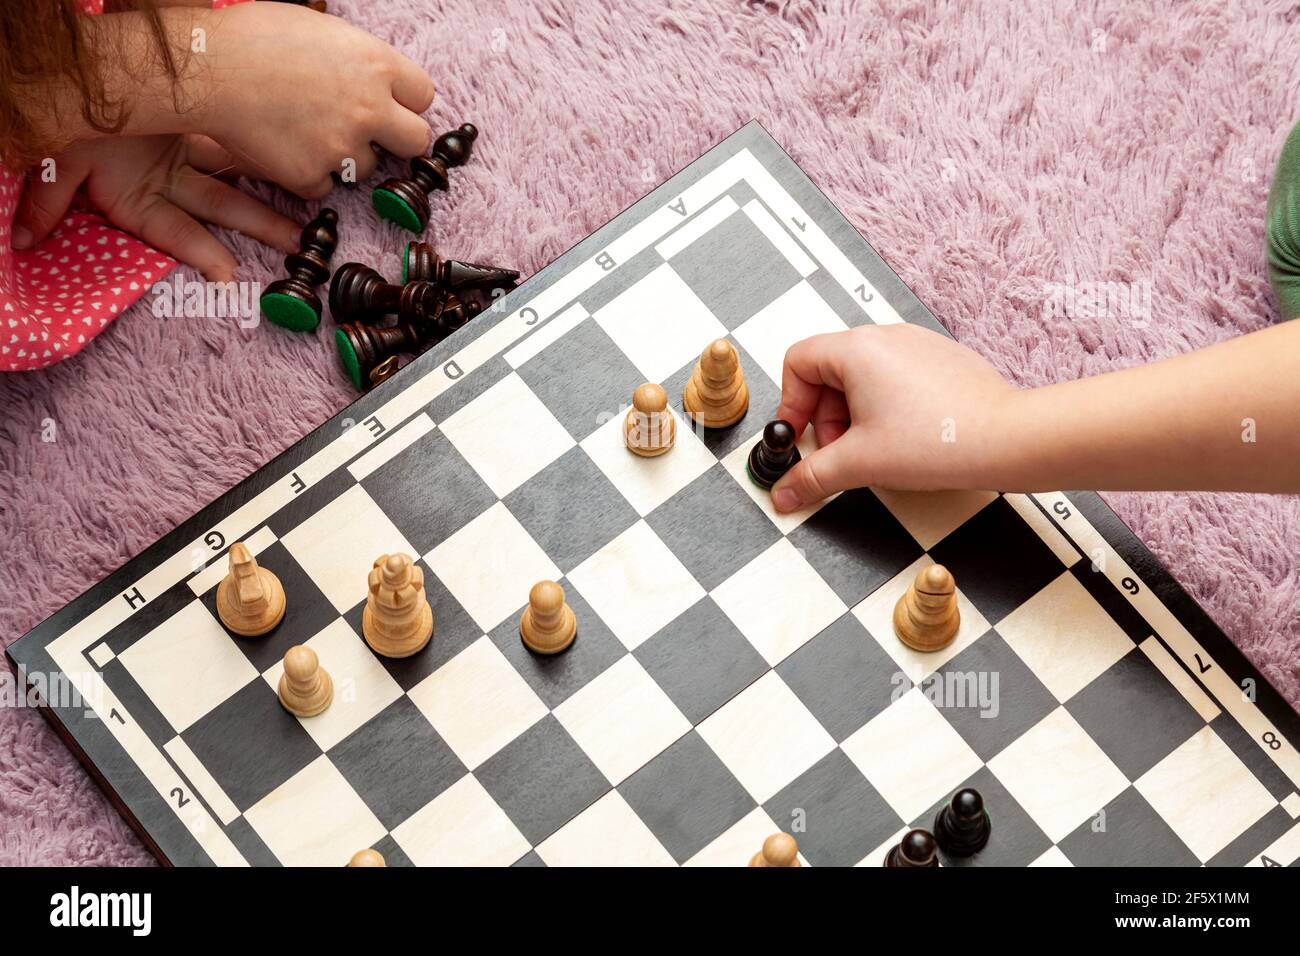 Anonyme jeunes enfants d'âge scolaire jouant aux échecs à la maison, à bord sur le sol, les mains de gros plan, les pièces mobiles d'échecs. Vue de dessus de l'échiquier, simple haut an Banque D'Images